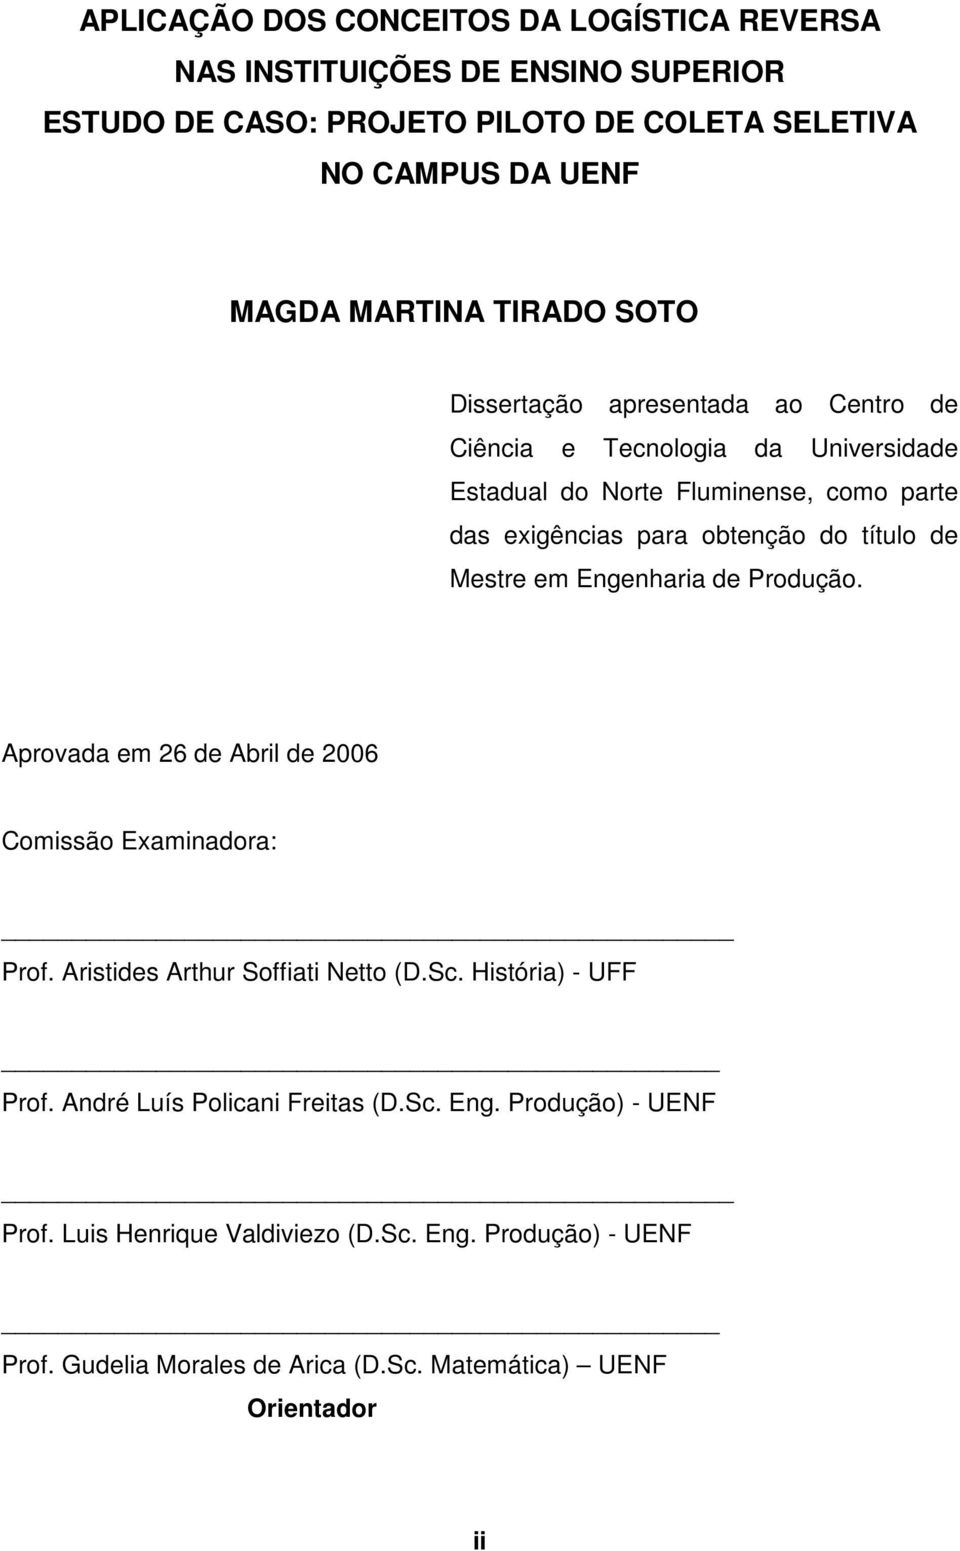 de Mestre em Engenharia de Produção. Aprovada em 26 de Abril de 2006 Comissão Examinadora: Prof. Aristides Arthur Soffiati Netto (D.Sc. História) - UFF Prof.